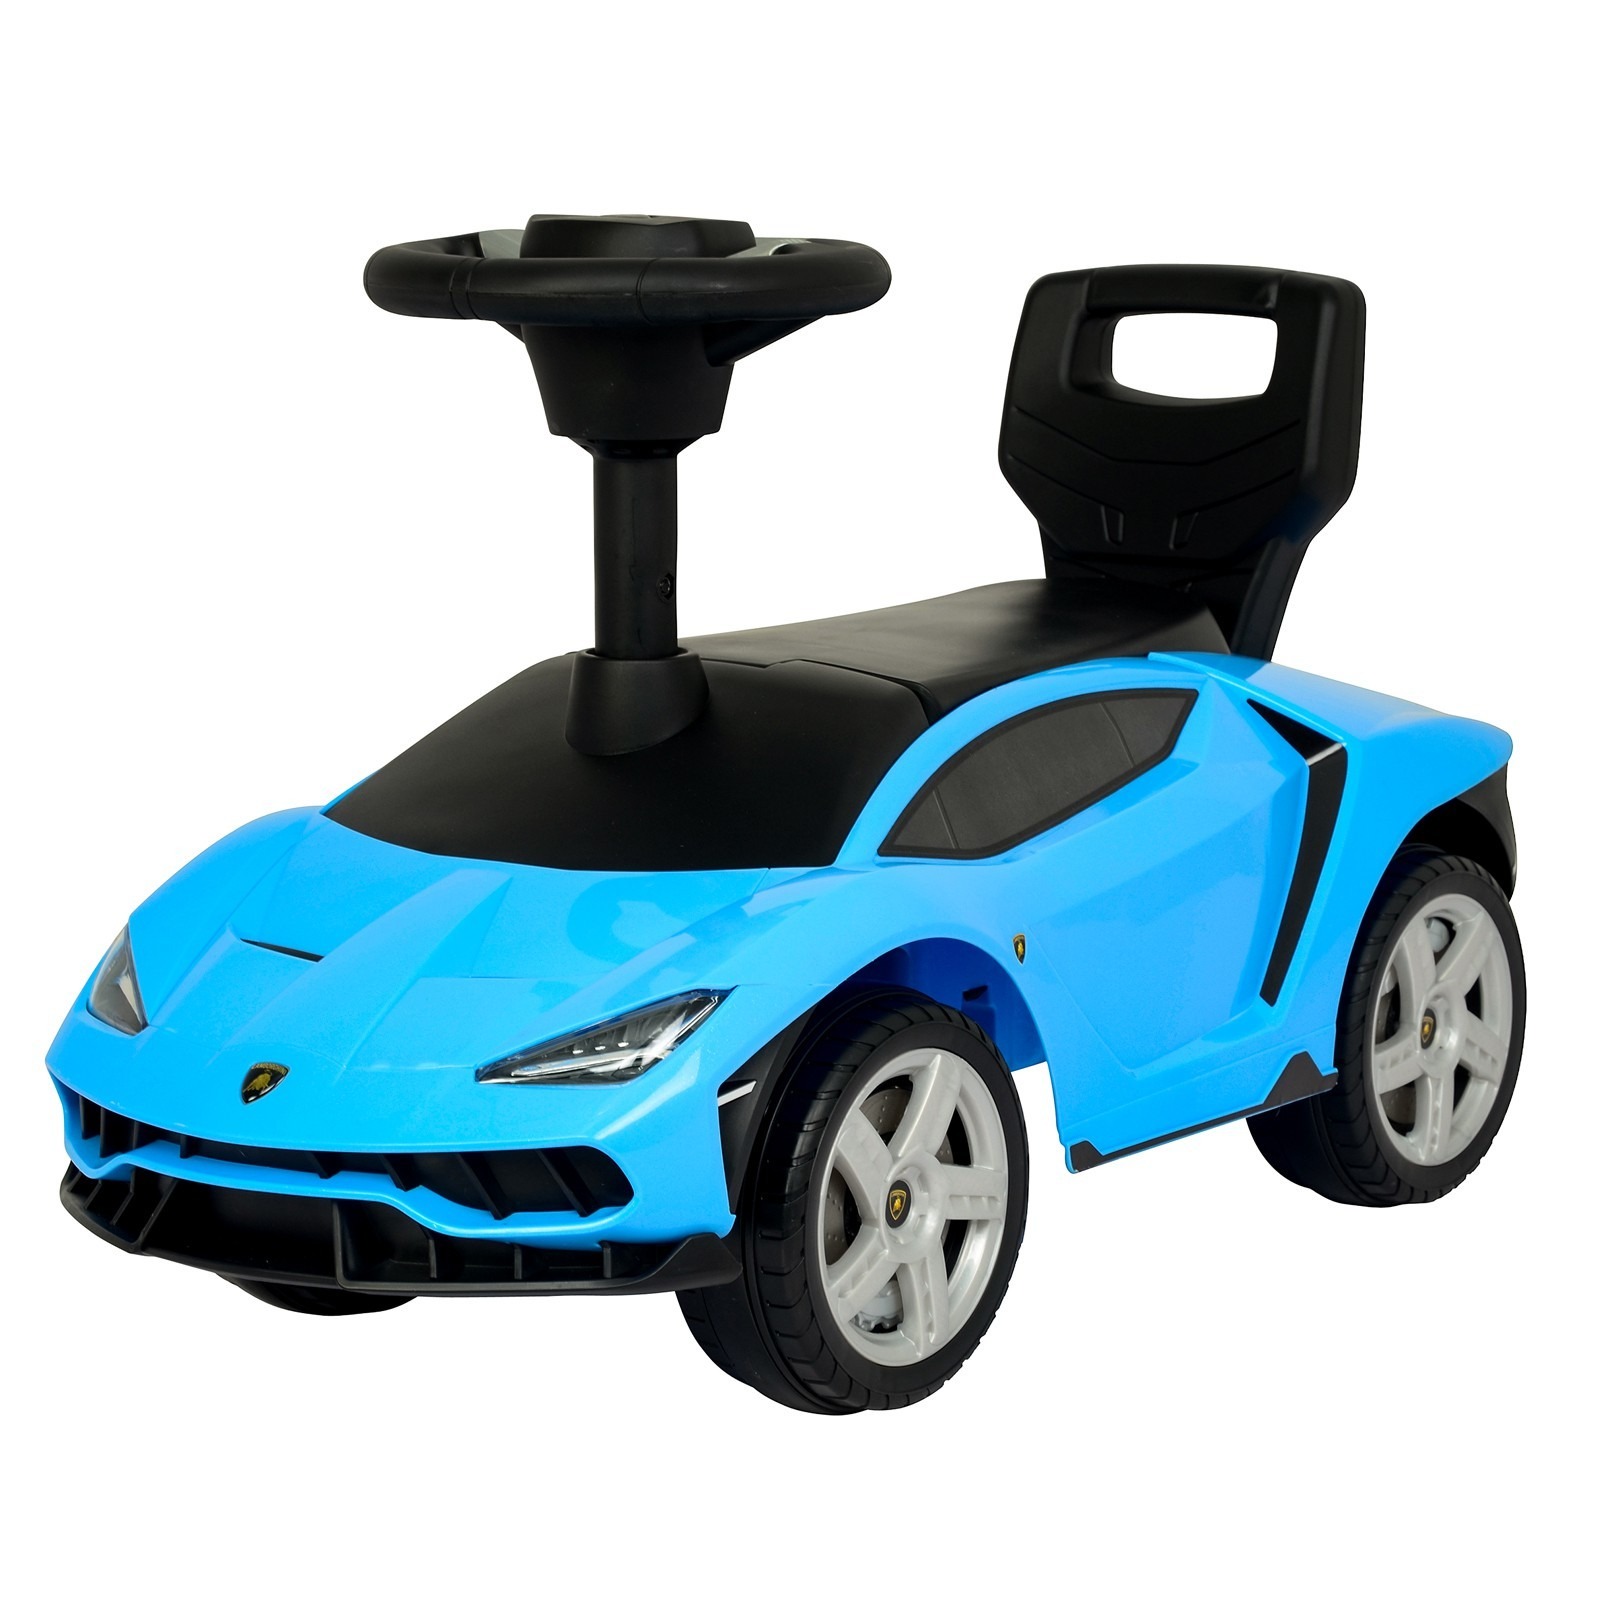 Толокар КНР Lamborghini Centenario, колеса из PVC, цвет синий (3726)